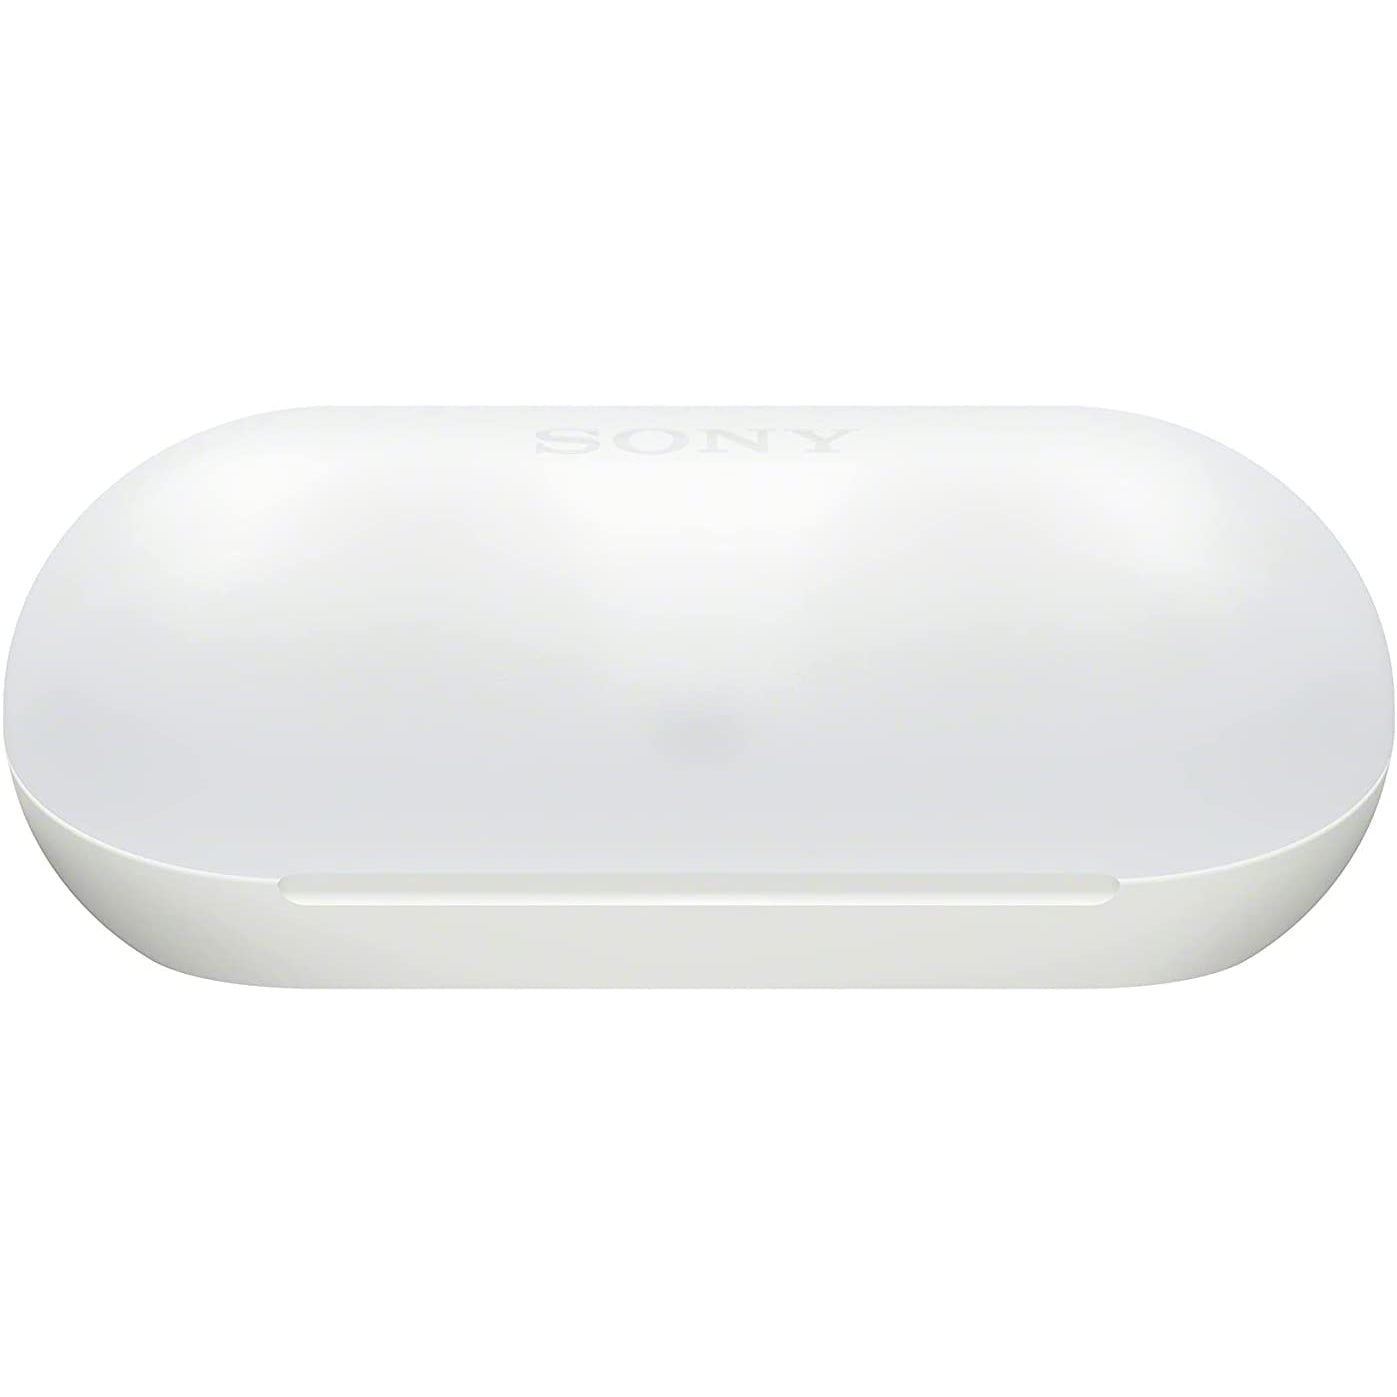 Sony WF-C500 Wireless Earbuds - White - Refurbished Pristine